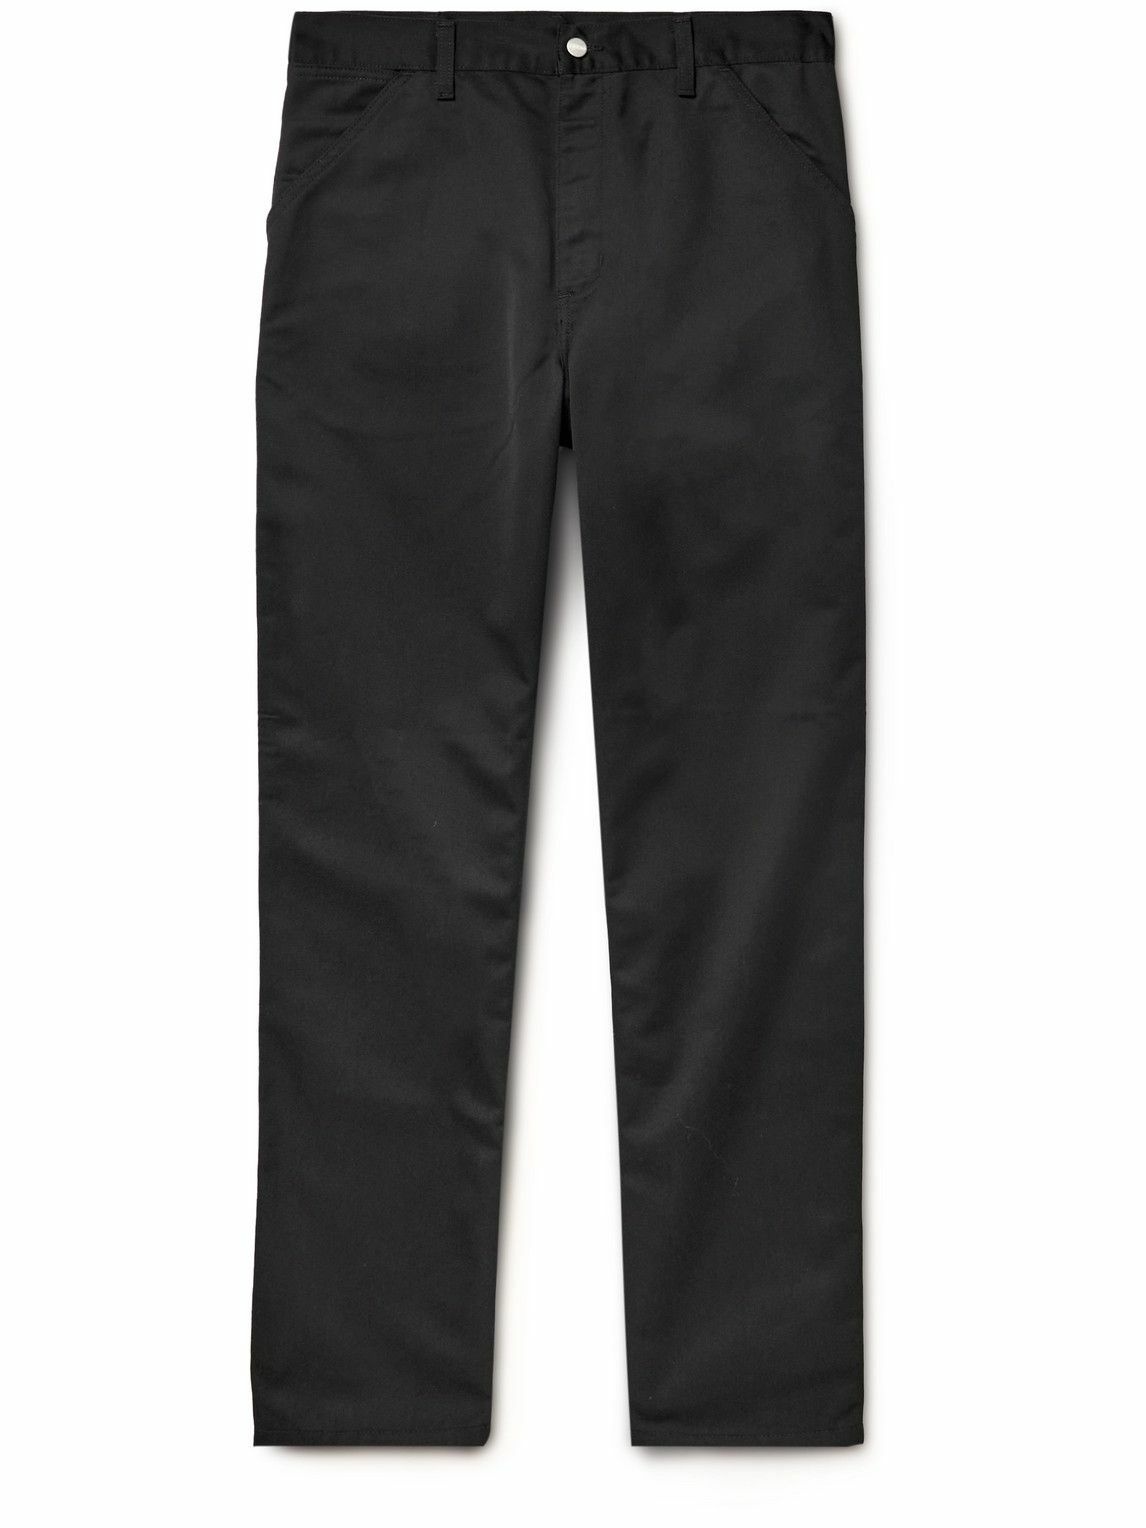 Carhartt WIP - Straight-Leg Black Twill Trousers - Black Carhartt WIP